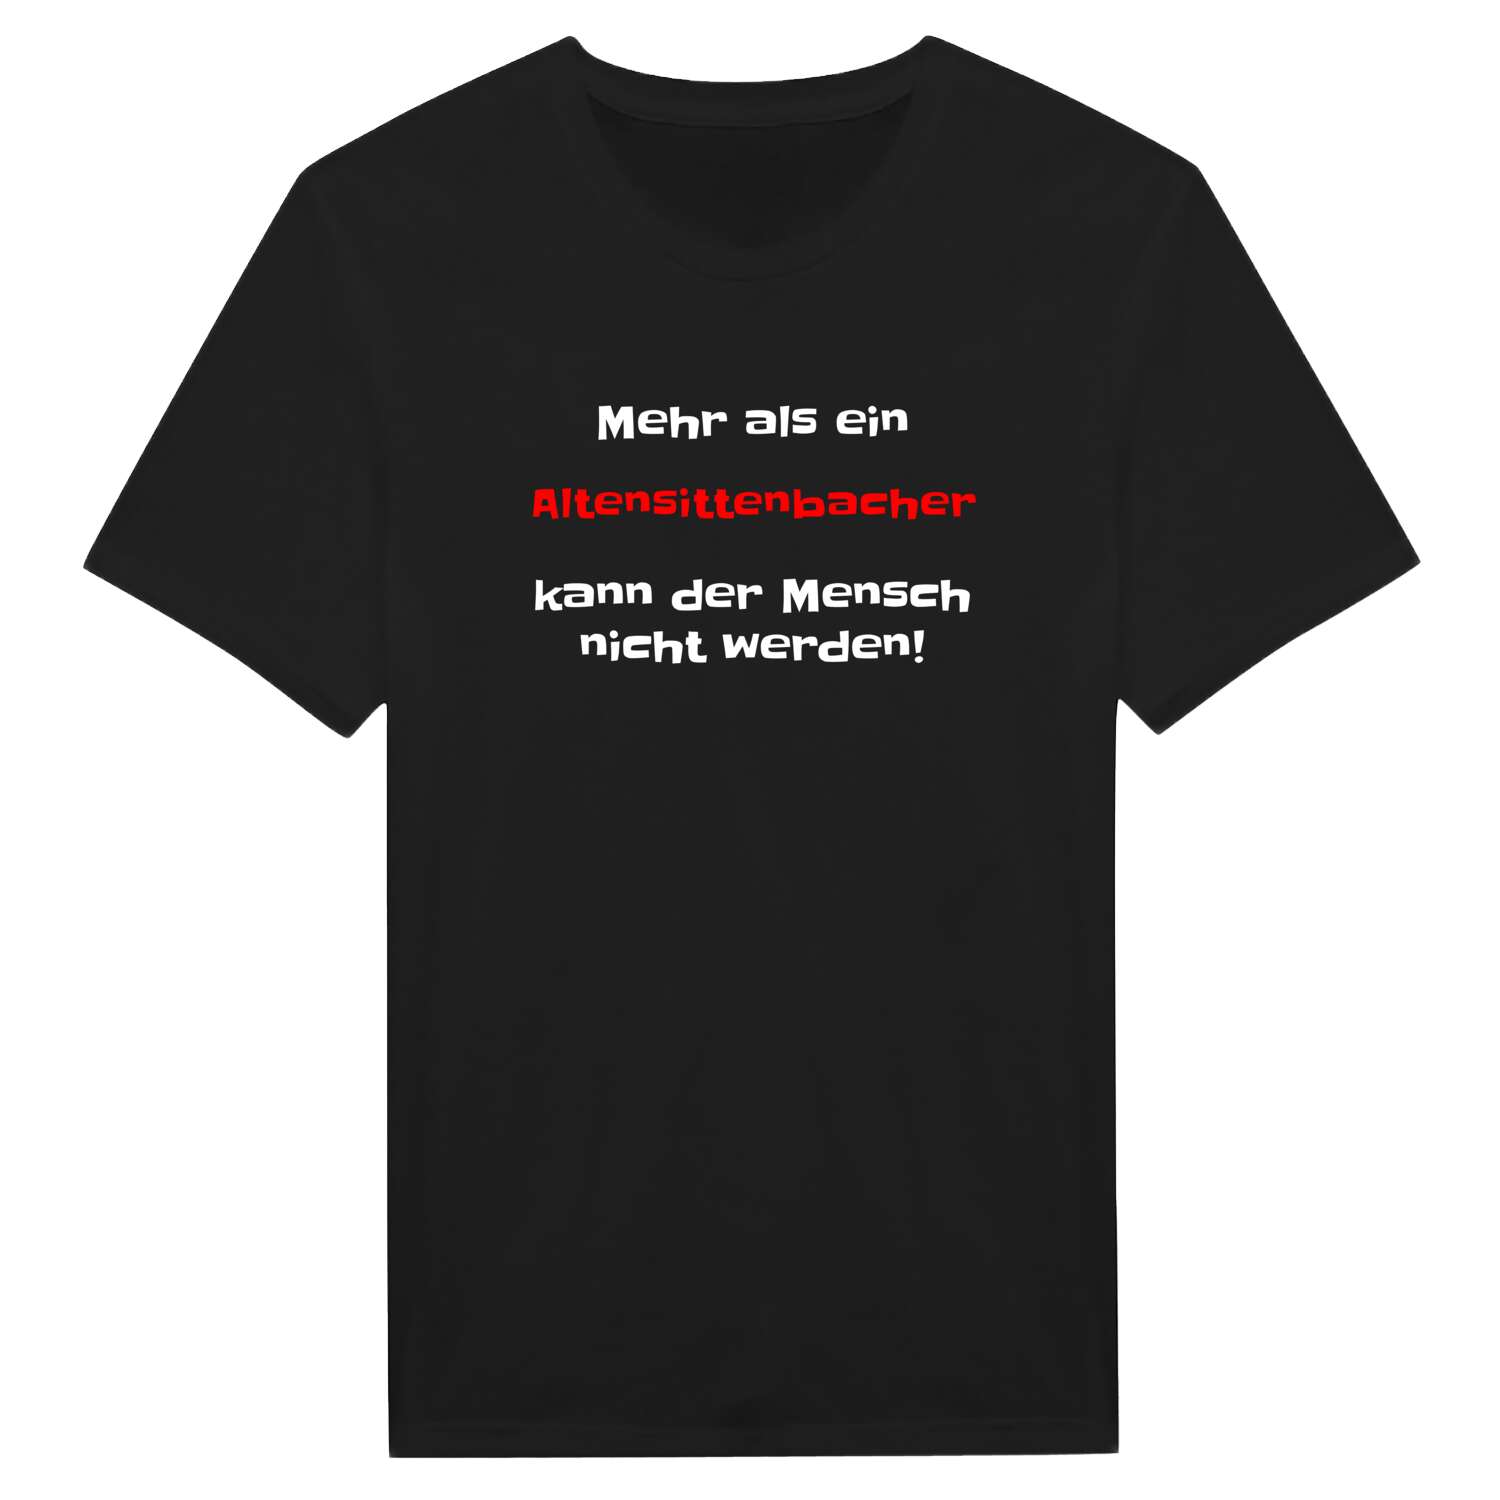 Altensittenbach T-Shirt »Mehr als ein«